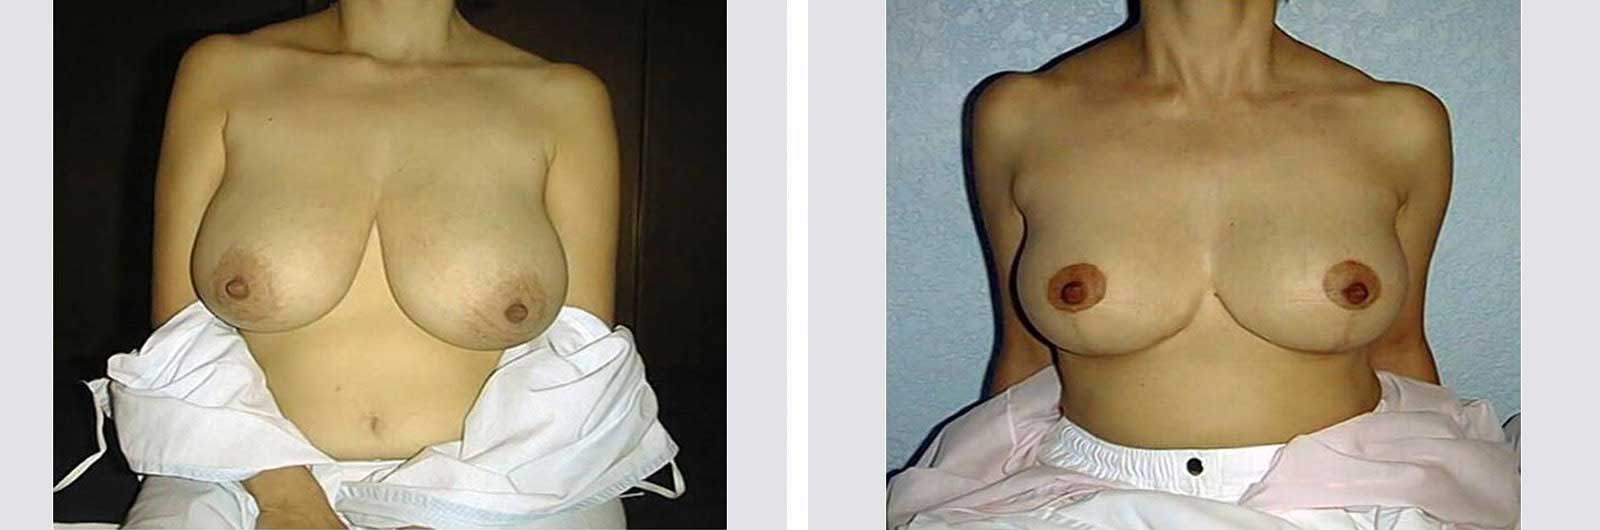 Cirugía de reducción de senos por Dr. Manlio Speziale